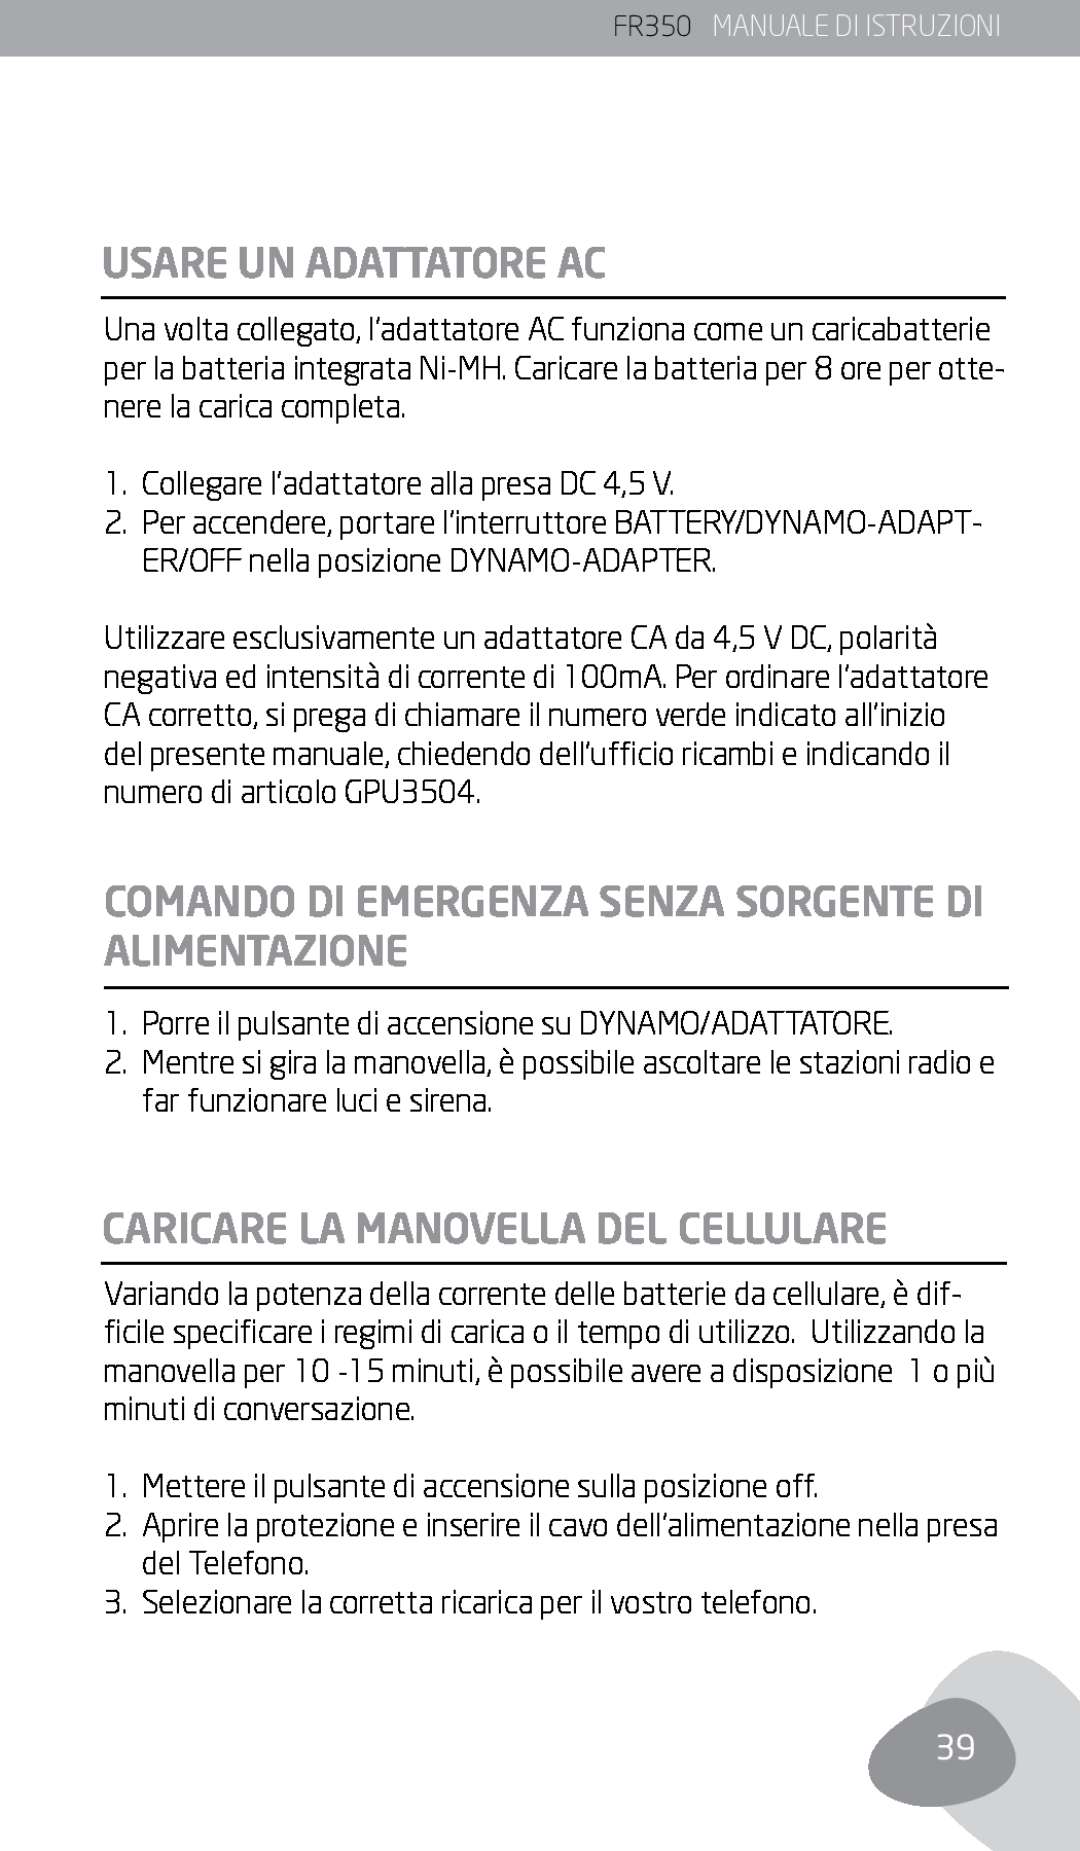 Eton FR350 owner manual Usare Un Adattatore Ac, Caricare La Manovella Del Cellulare 